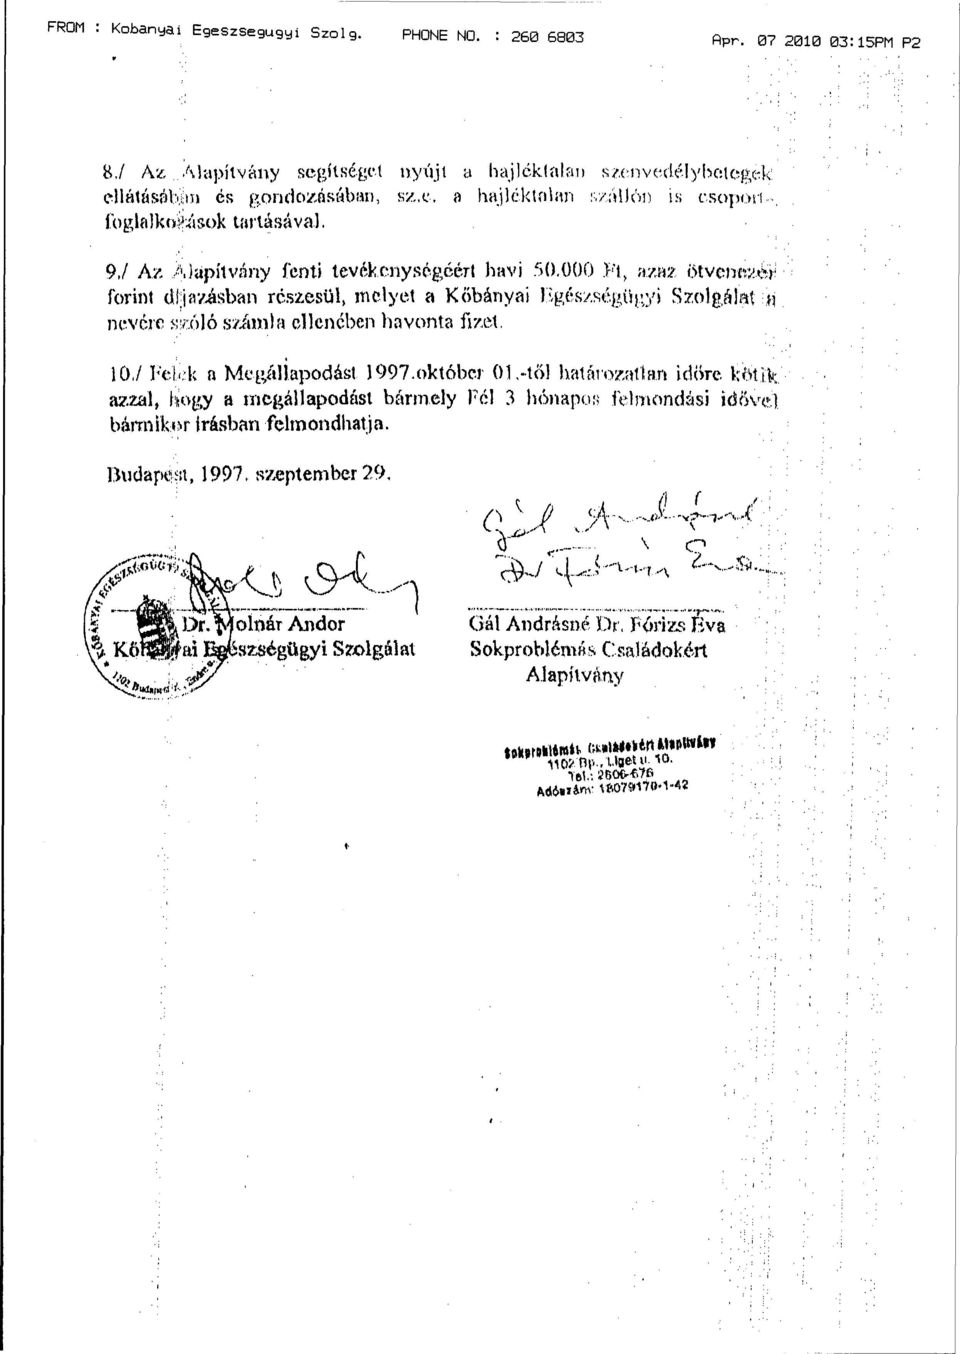 10,/ Felek a Megállapodást 1997.október 01,-tői határozatlan időre kötik azzal, hogy a megállapodást bármely Fél 3 hónapos felmondási idővel bármikor Írásban felmondhatja. Budapest, 1997.